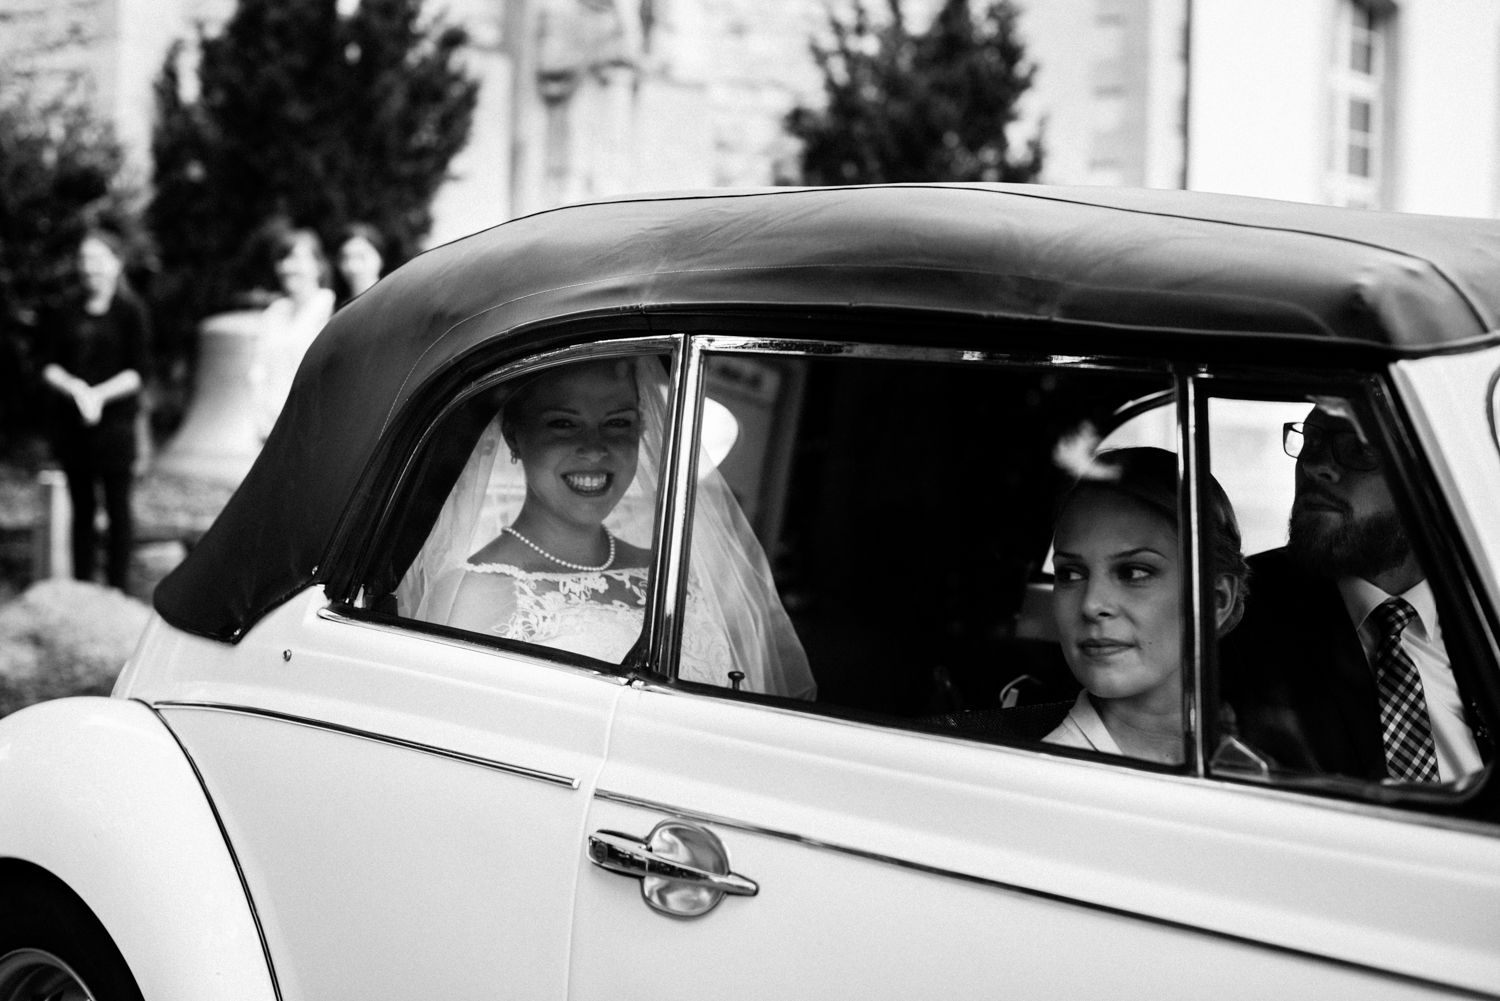 Braut am Hochzeitstag im Auto